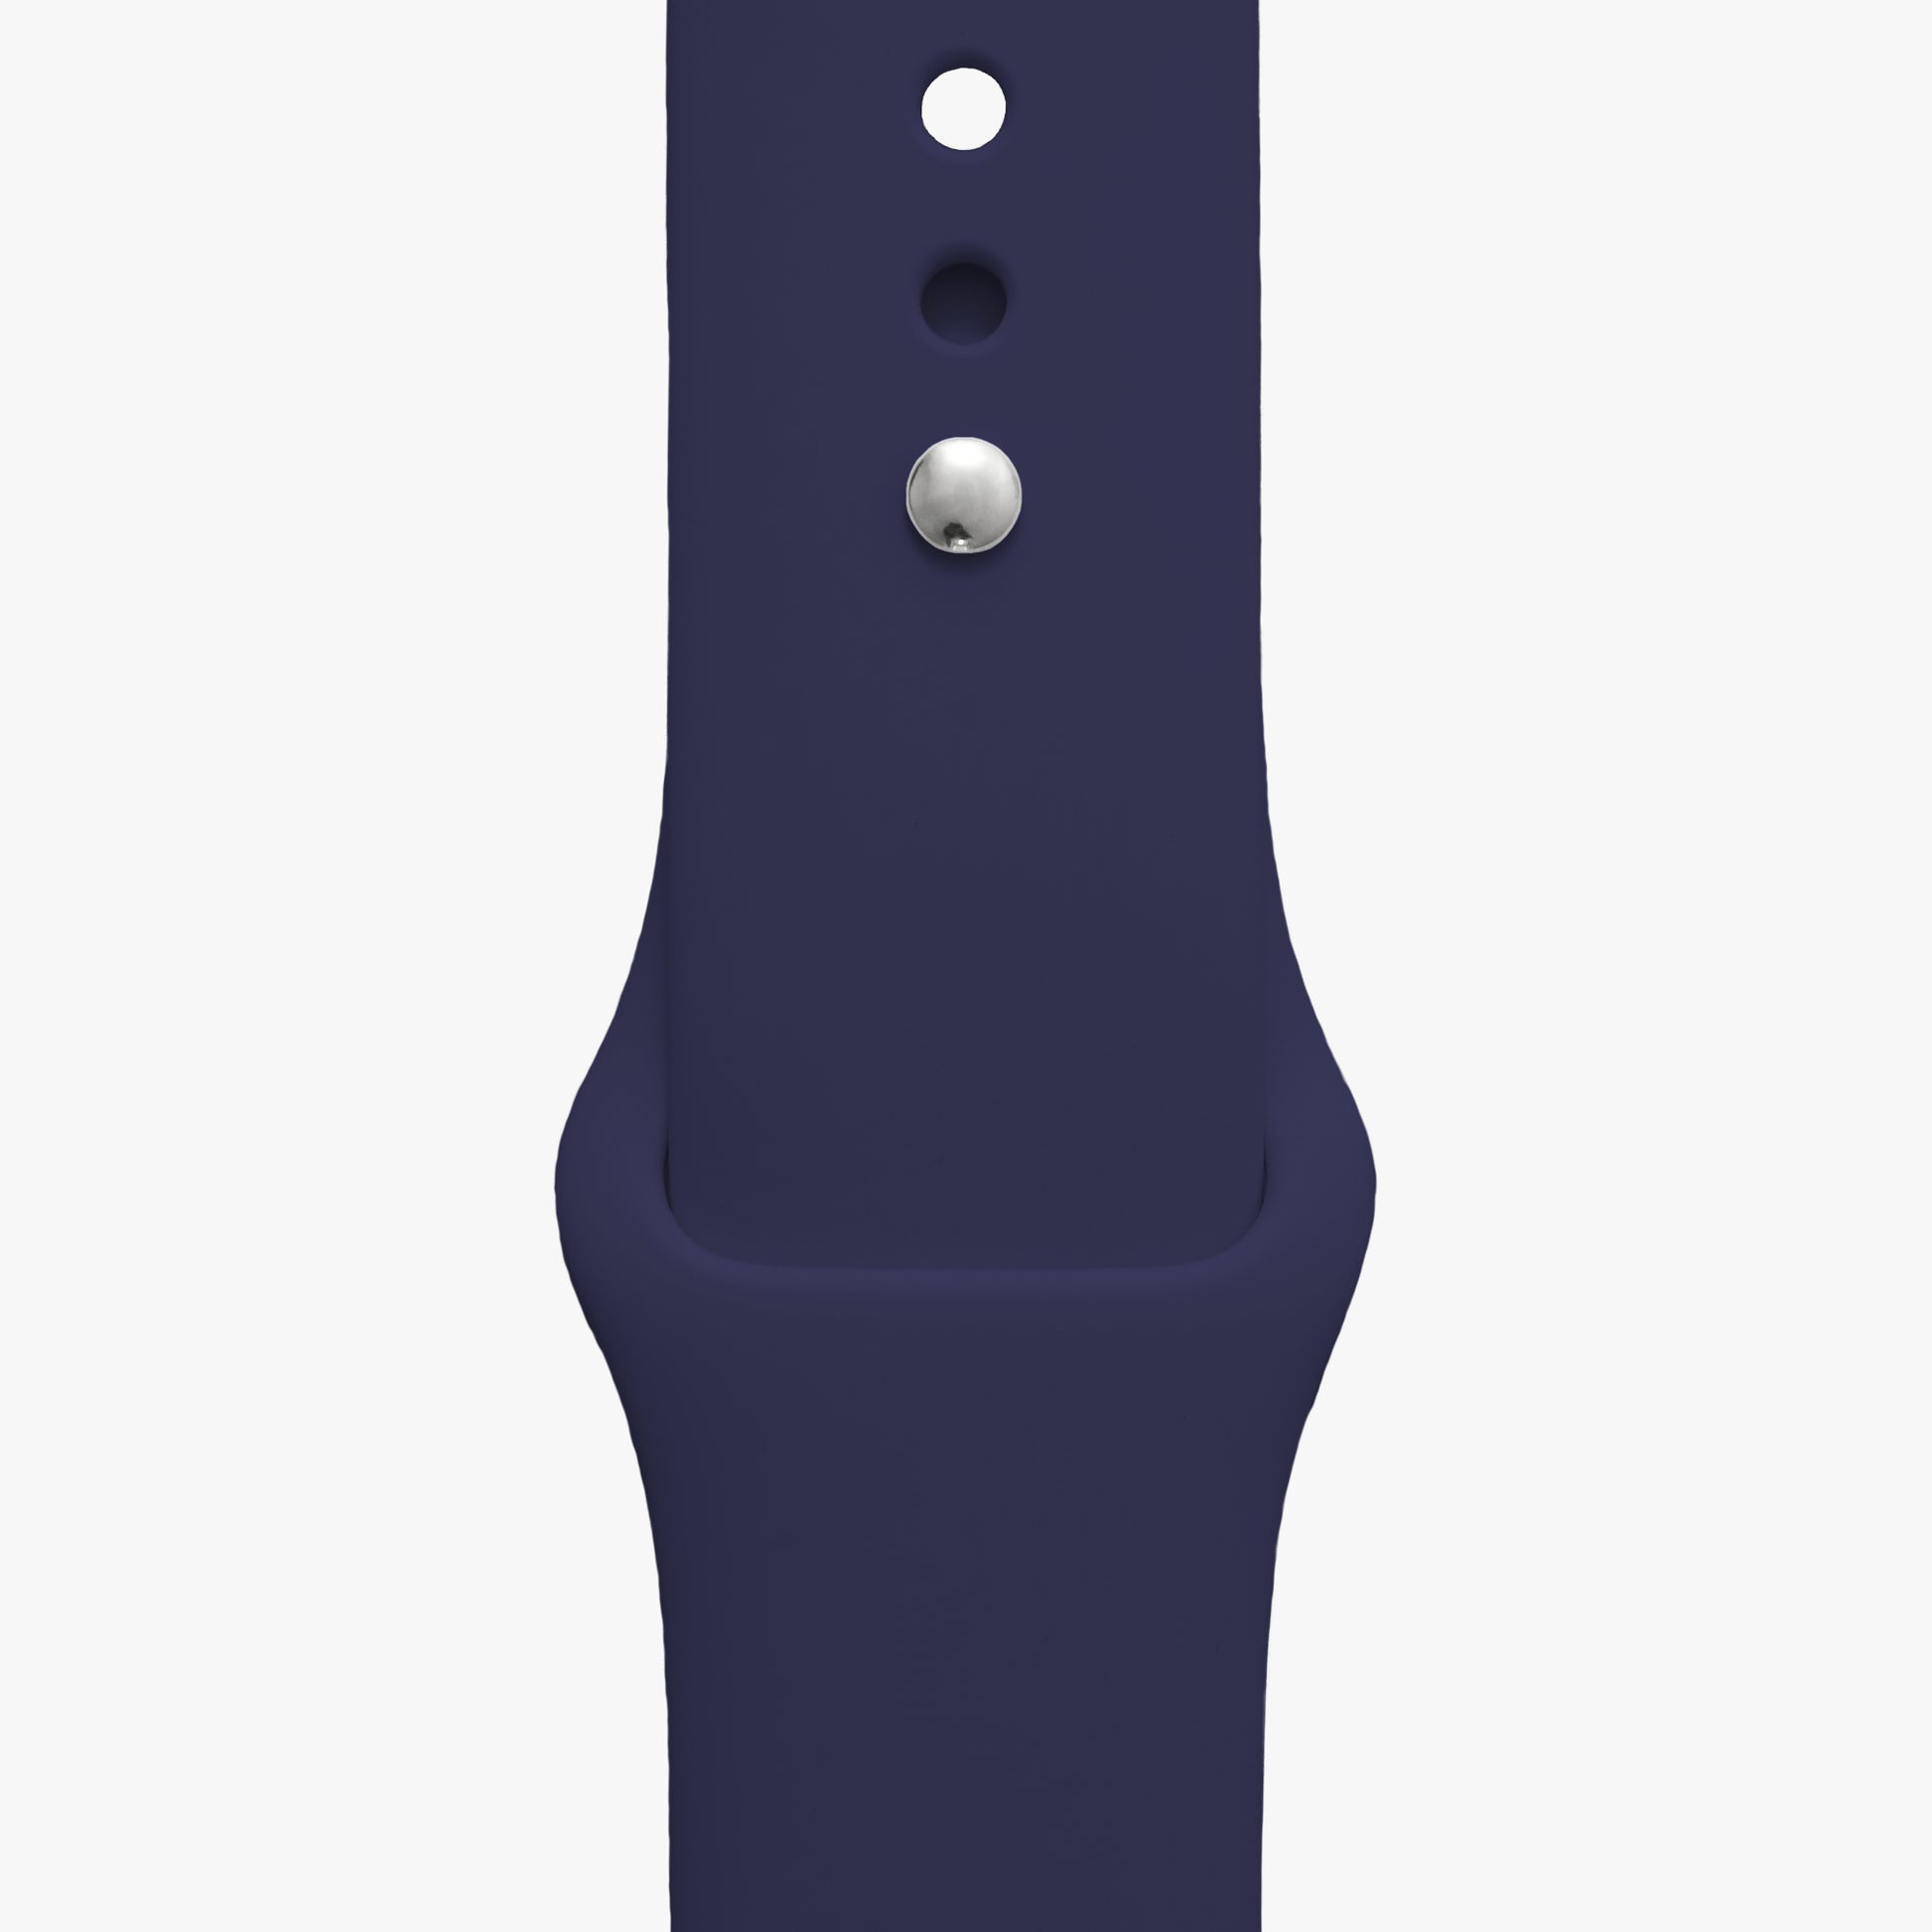 Armband für Apple Watch - 2 Größen in Länge S/M + M/L - Farbe nachtblau